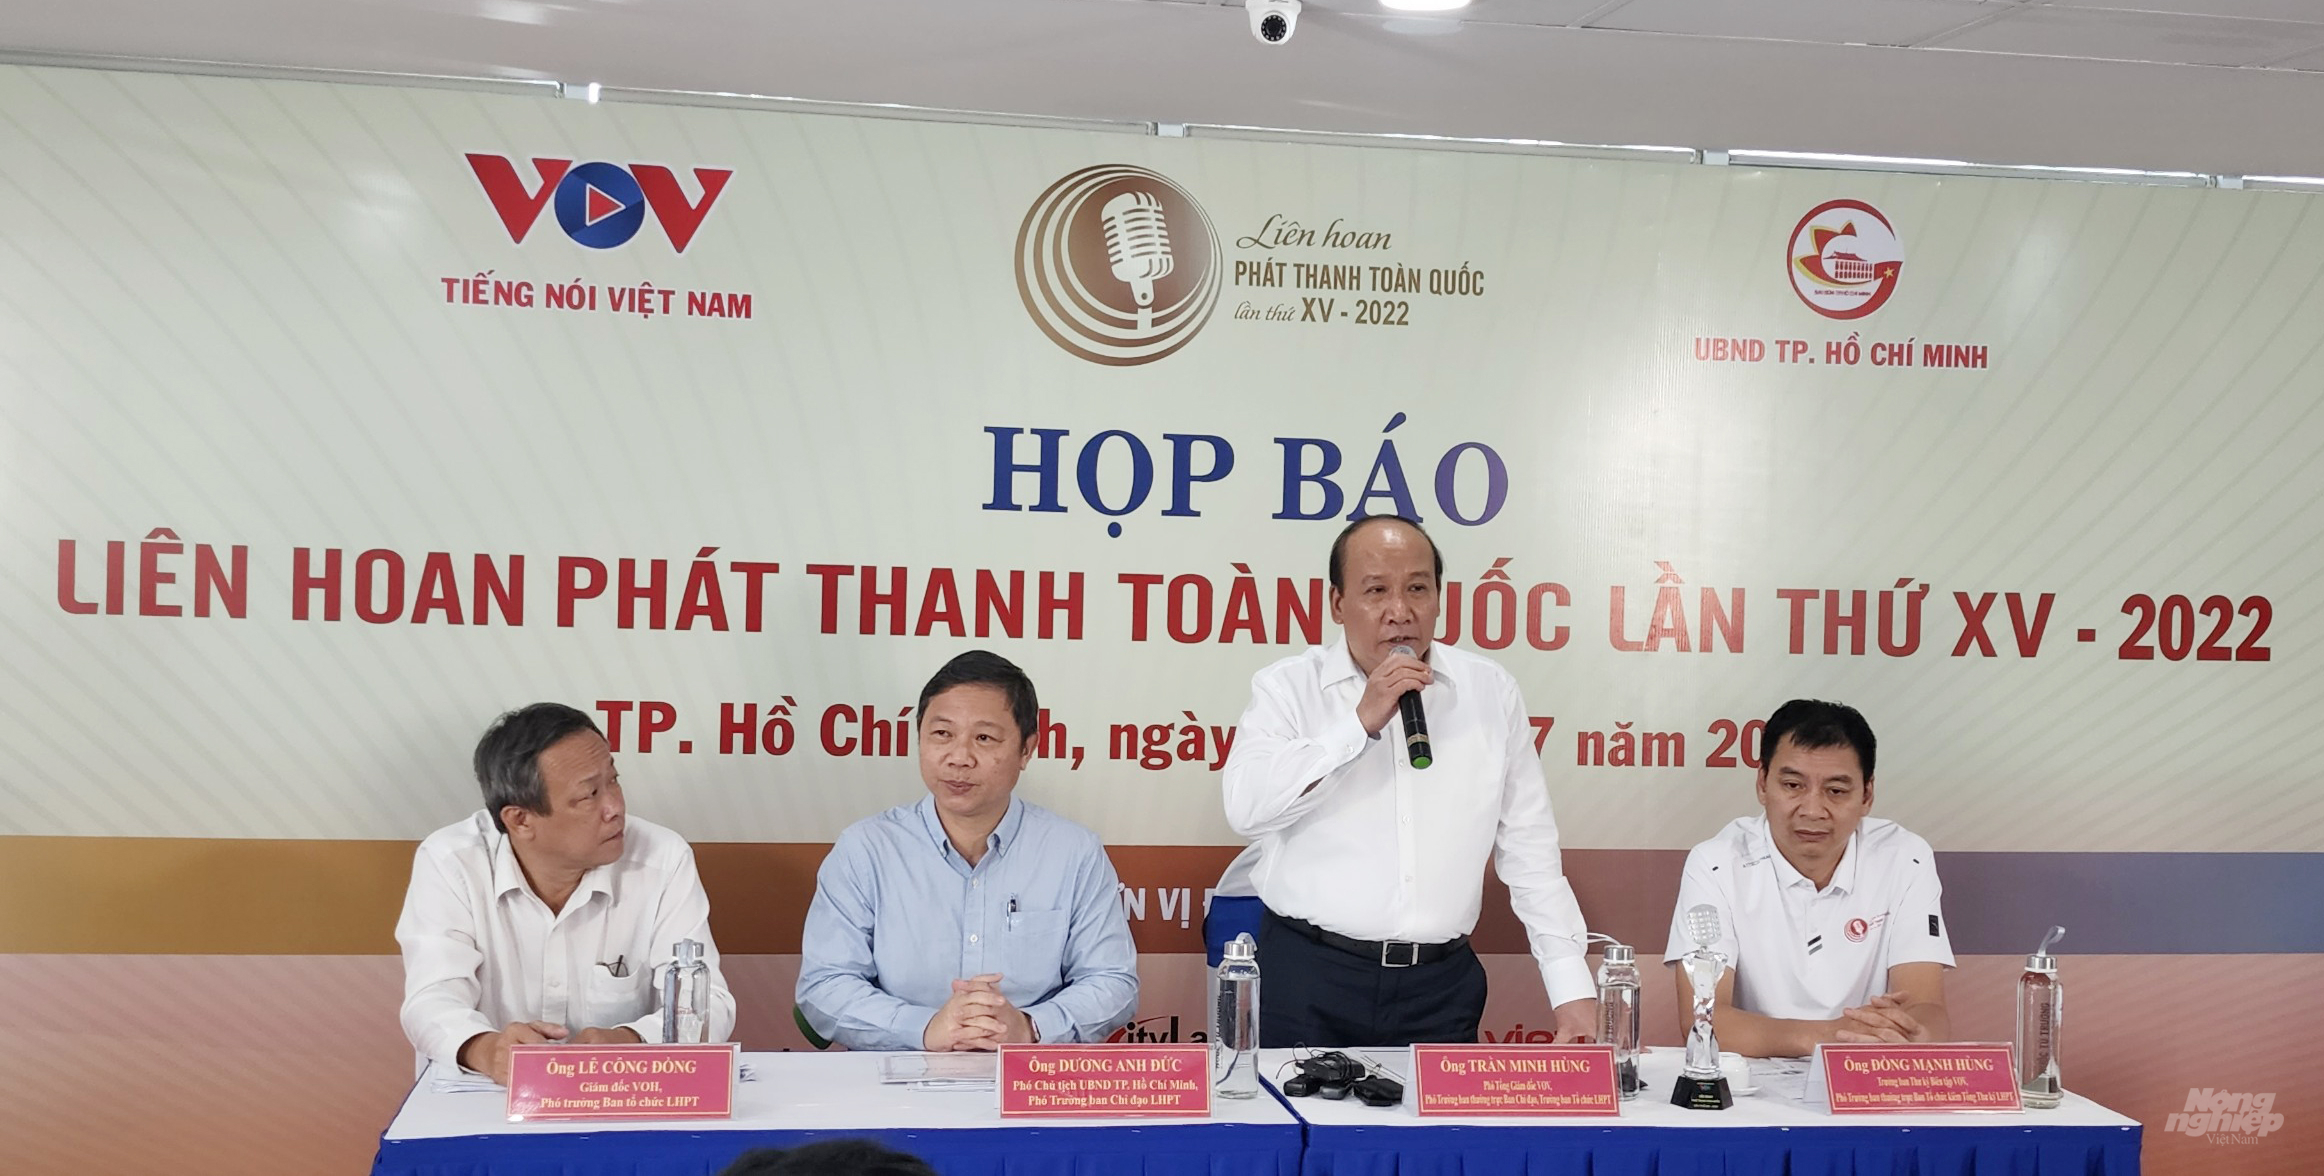 Theo BTC, đây là hoạt động nghiệp vụ của ngành phát thanh Việt Nam, được tổ chức định kỳ hai năm một lần, nhằm phát hiện, tôn vinh những tác giả, tác phẩm xuất sắc của những người làm báo phát thanh cả nước. Ảnh: Minh Sáng.